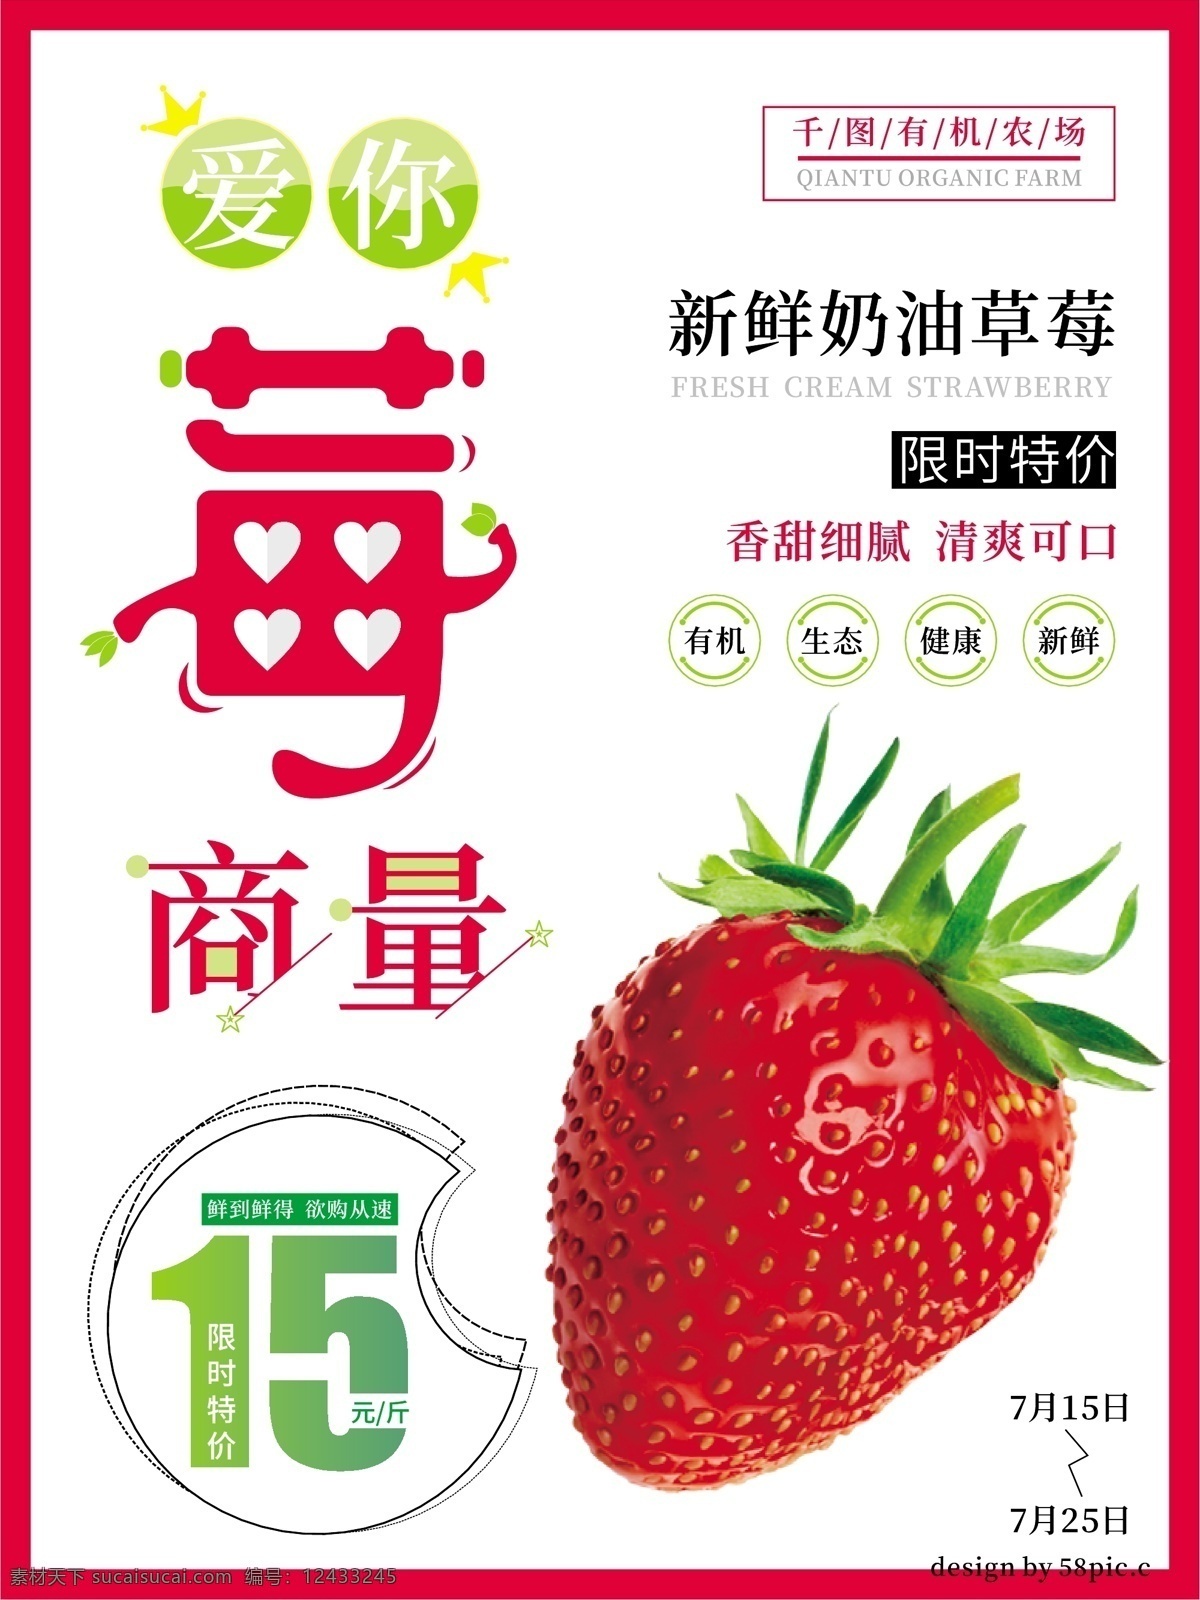 白色 简约 奶油 草莓 水果 促销 海报 绿色 特价 奶油草莓 新鲜 有机 美味